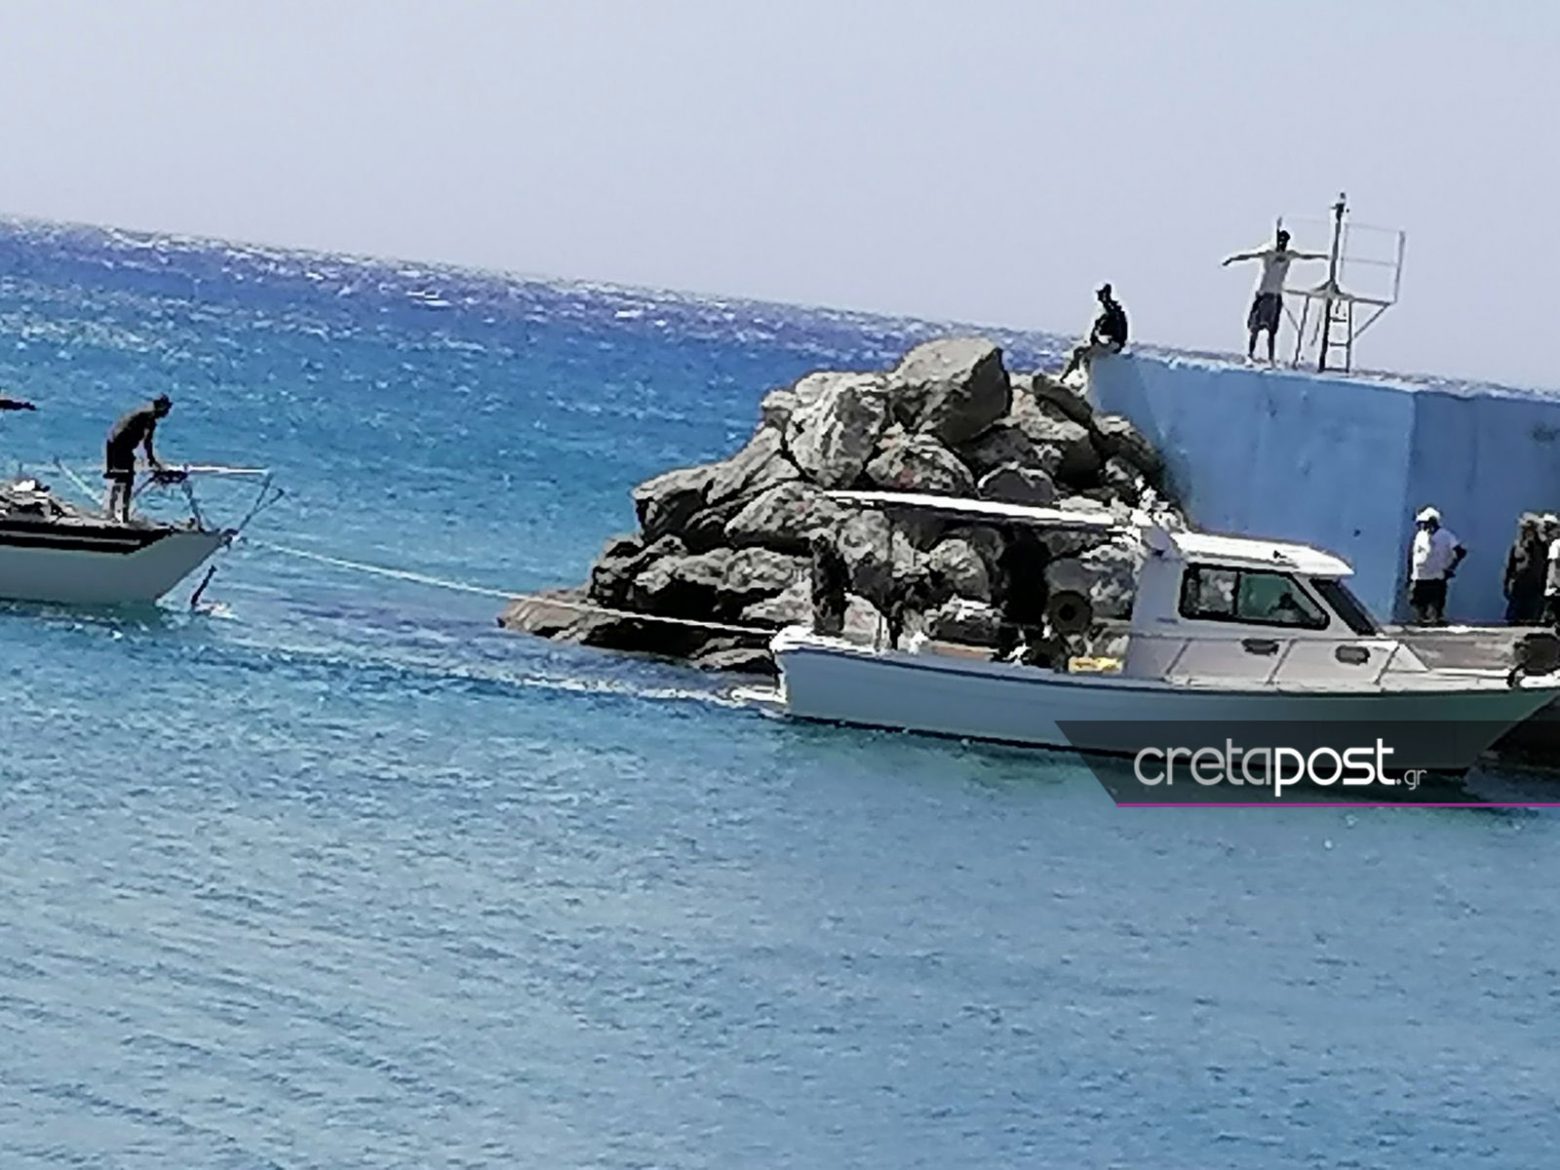 Κρήτη - Τούρκοι έφτασαν με ιστιοφόρο στην Ελλάδα και ζητούν άσυλο